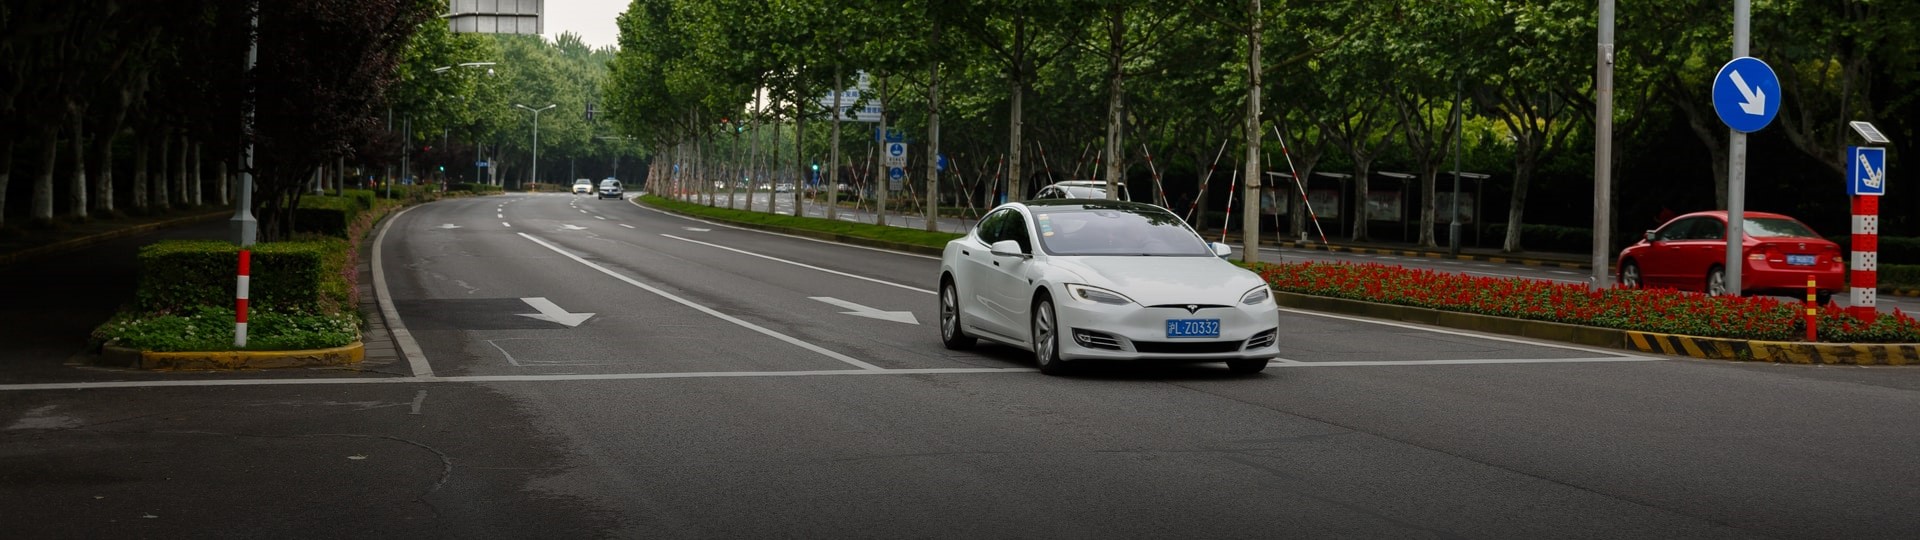 Vozy Tesla nemohou v Číně k vojenským objektům